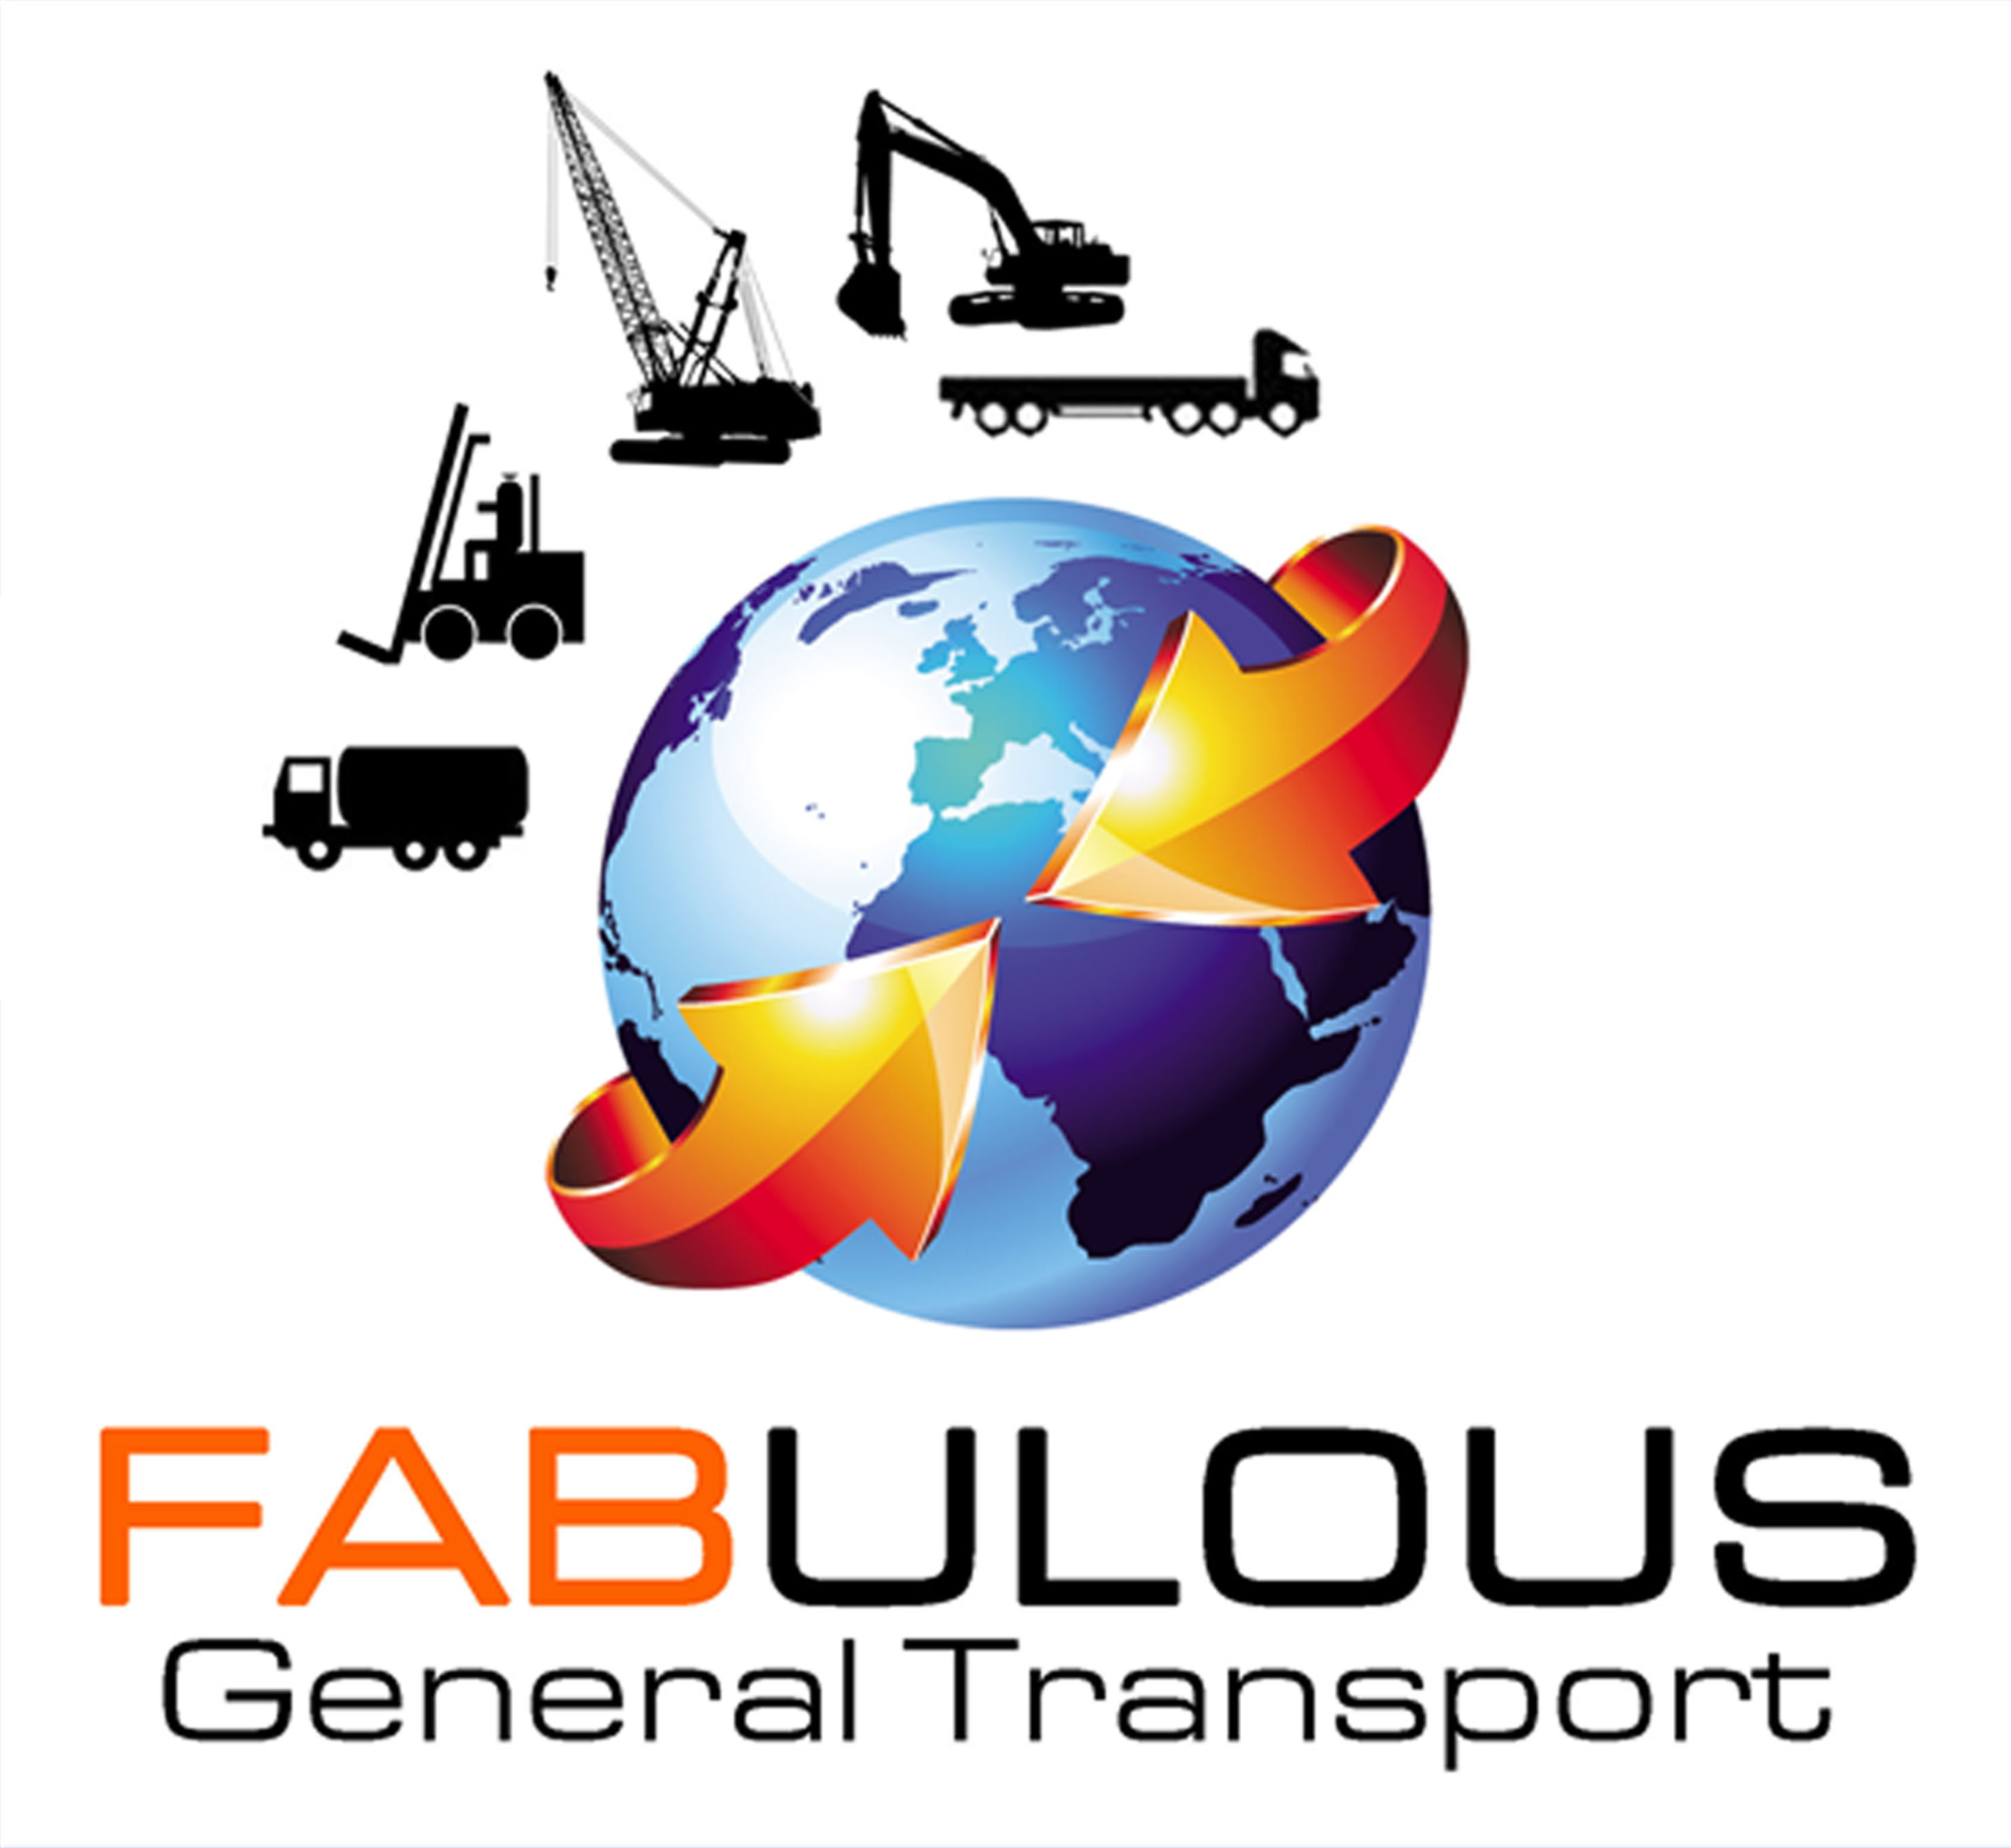 Fabulous General Transport